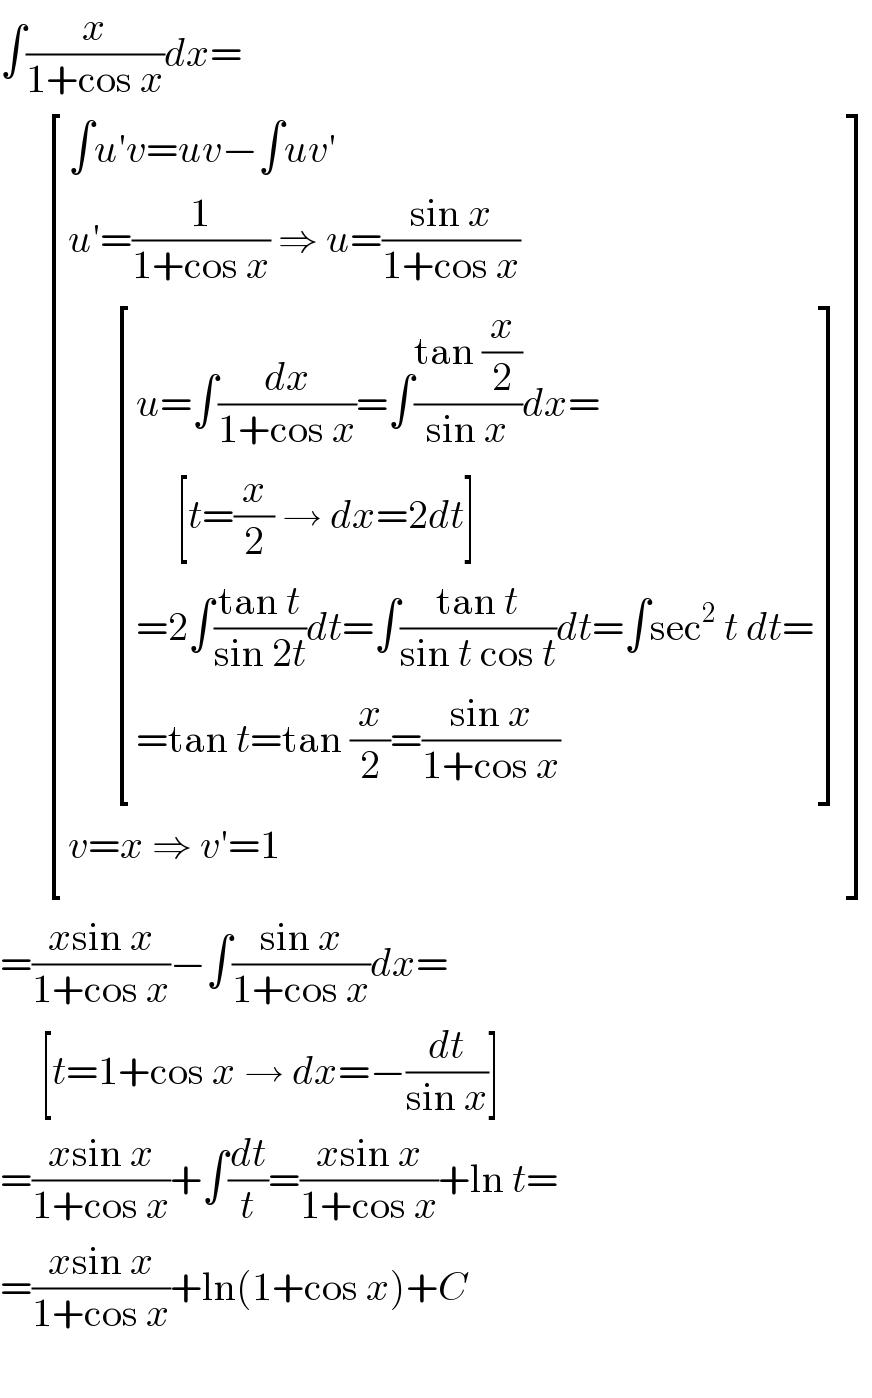 ∫(x/(1+cos x))dx=        [((∫u′v=uv−∫uv′)),((u′=(1/(1+cos x)) ⇒ u=((sin x)/(1+cos x)))),((      [((u=∫(dx/(1+cos x))=∫((tan (x/2))/(sin x))dx=)),((     [t=(x/2) → dx=2dt])),((=2∫((tan t)/(sin 2t))dt=∫((tan t)/(sin t cos t))dt=∫sec^2  t dt=)),((=tan t=tan (x/2)=((sin x)/(1+cos x)))) ])),((v=x ⇒ v′=1)) ]  =((xsin x)/(1+cos x))−∫((sin x)/(1+cos x))dx=       [t=1+cos x → dx=−(dt/(sin x))]  =((xsin x)/(1+cos x))+∫(dt/t)=((xsin x)/(1+cos x))+ln t=  =((xsin x)/(1+cos x))+ln(1+cos x)+C    